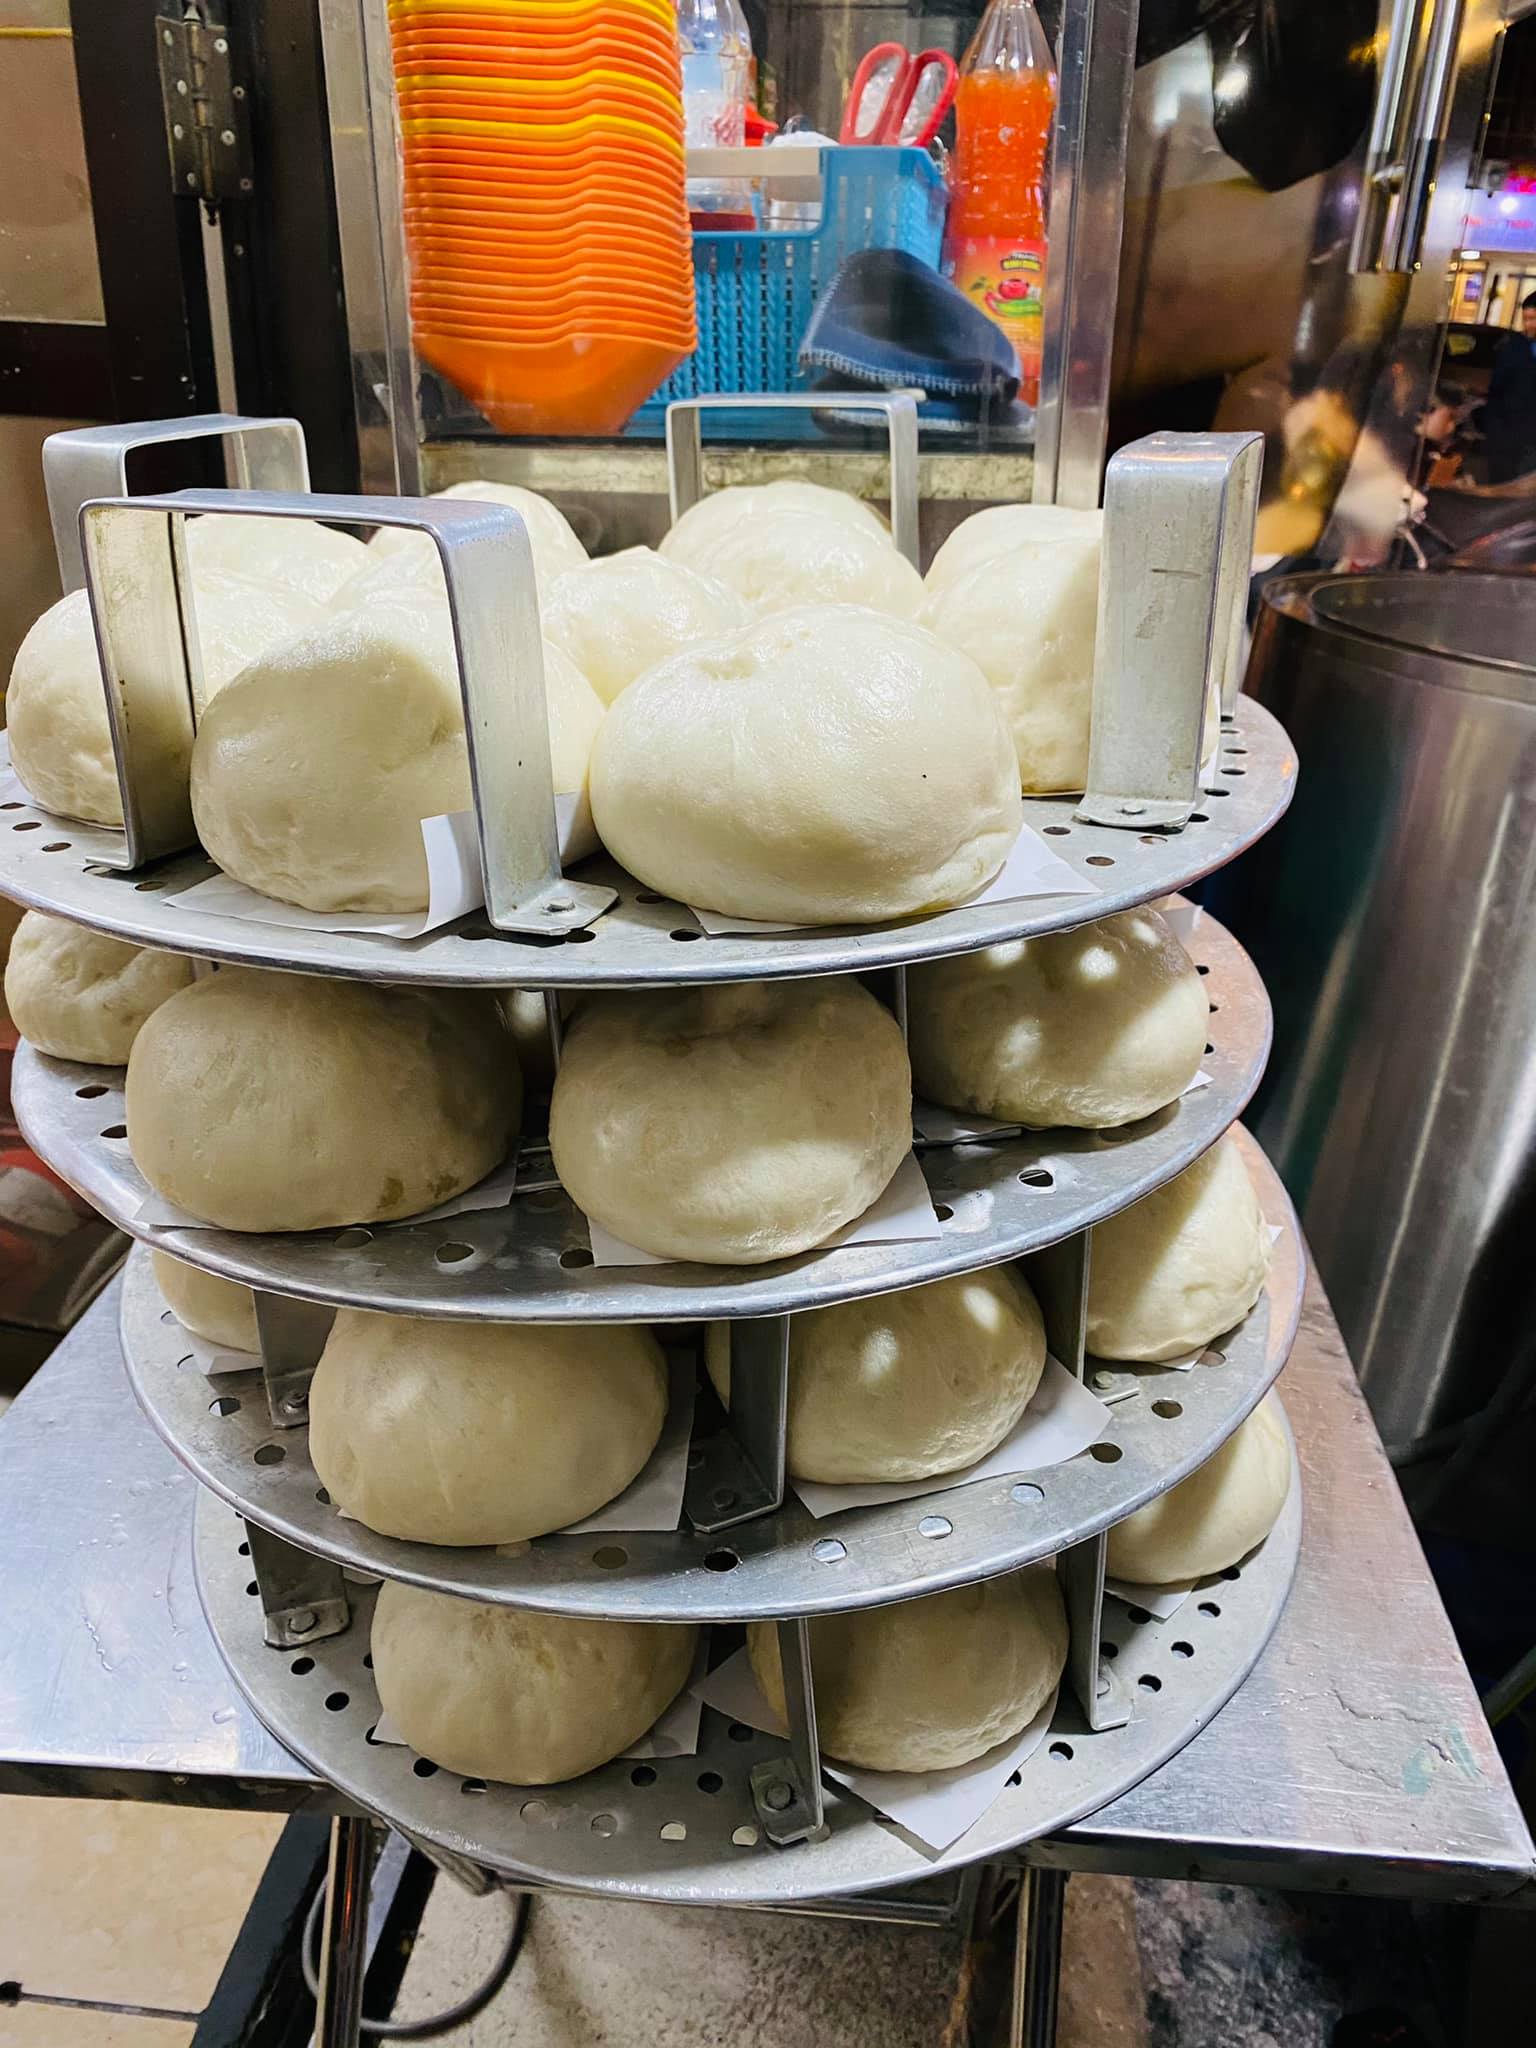 Dàn hấp bánh chuyên nghiệp của bánh bao bà Mậu. Ảnh: Facebook Ngoc Tuan Nguyen